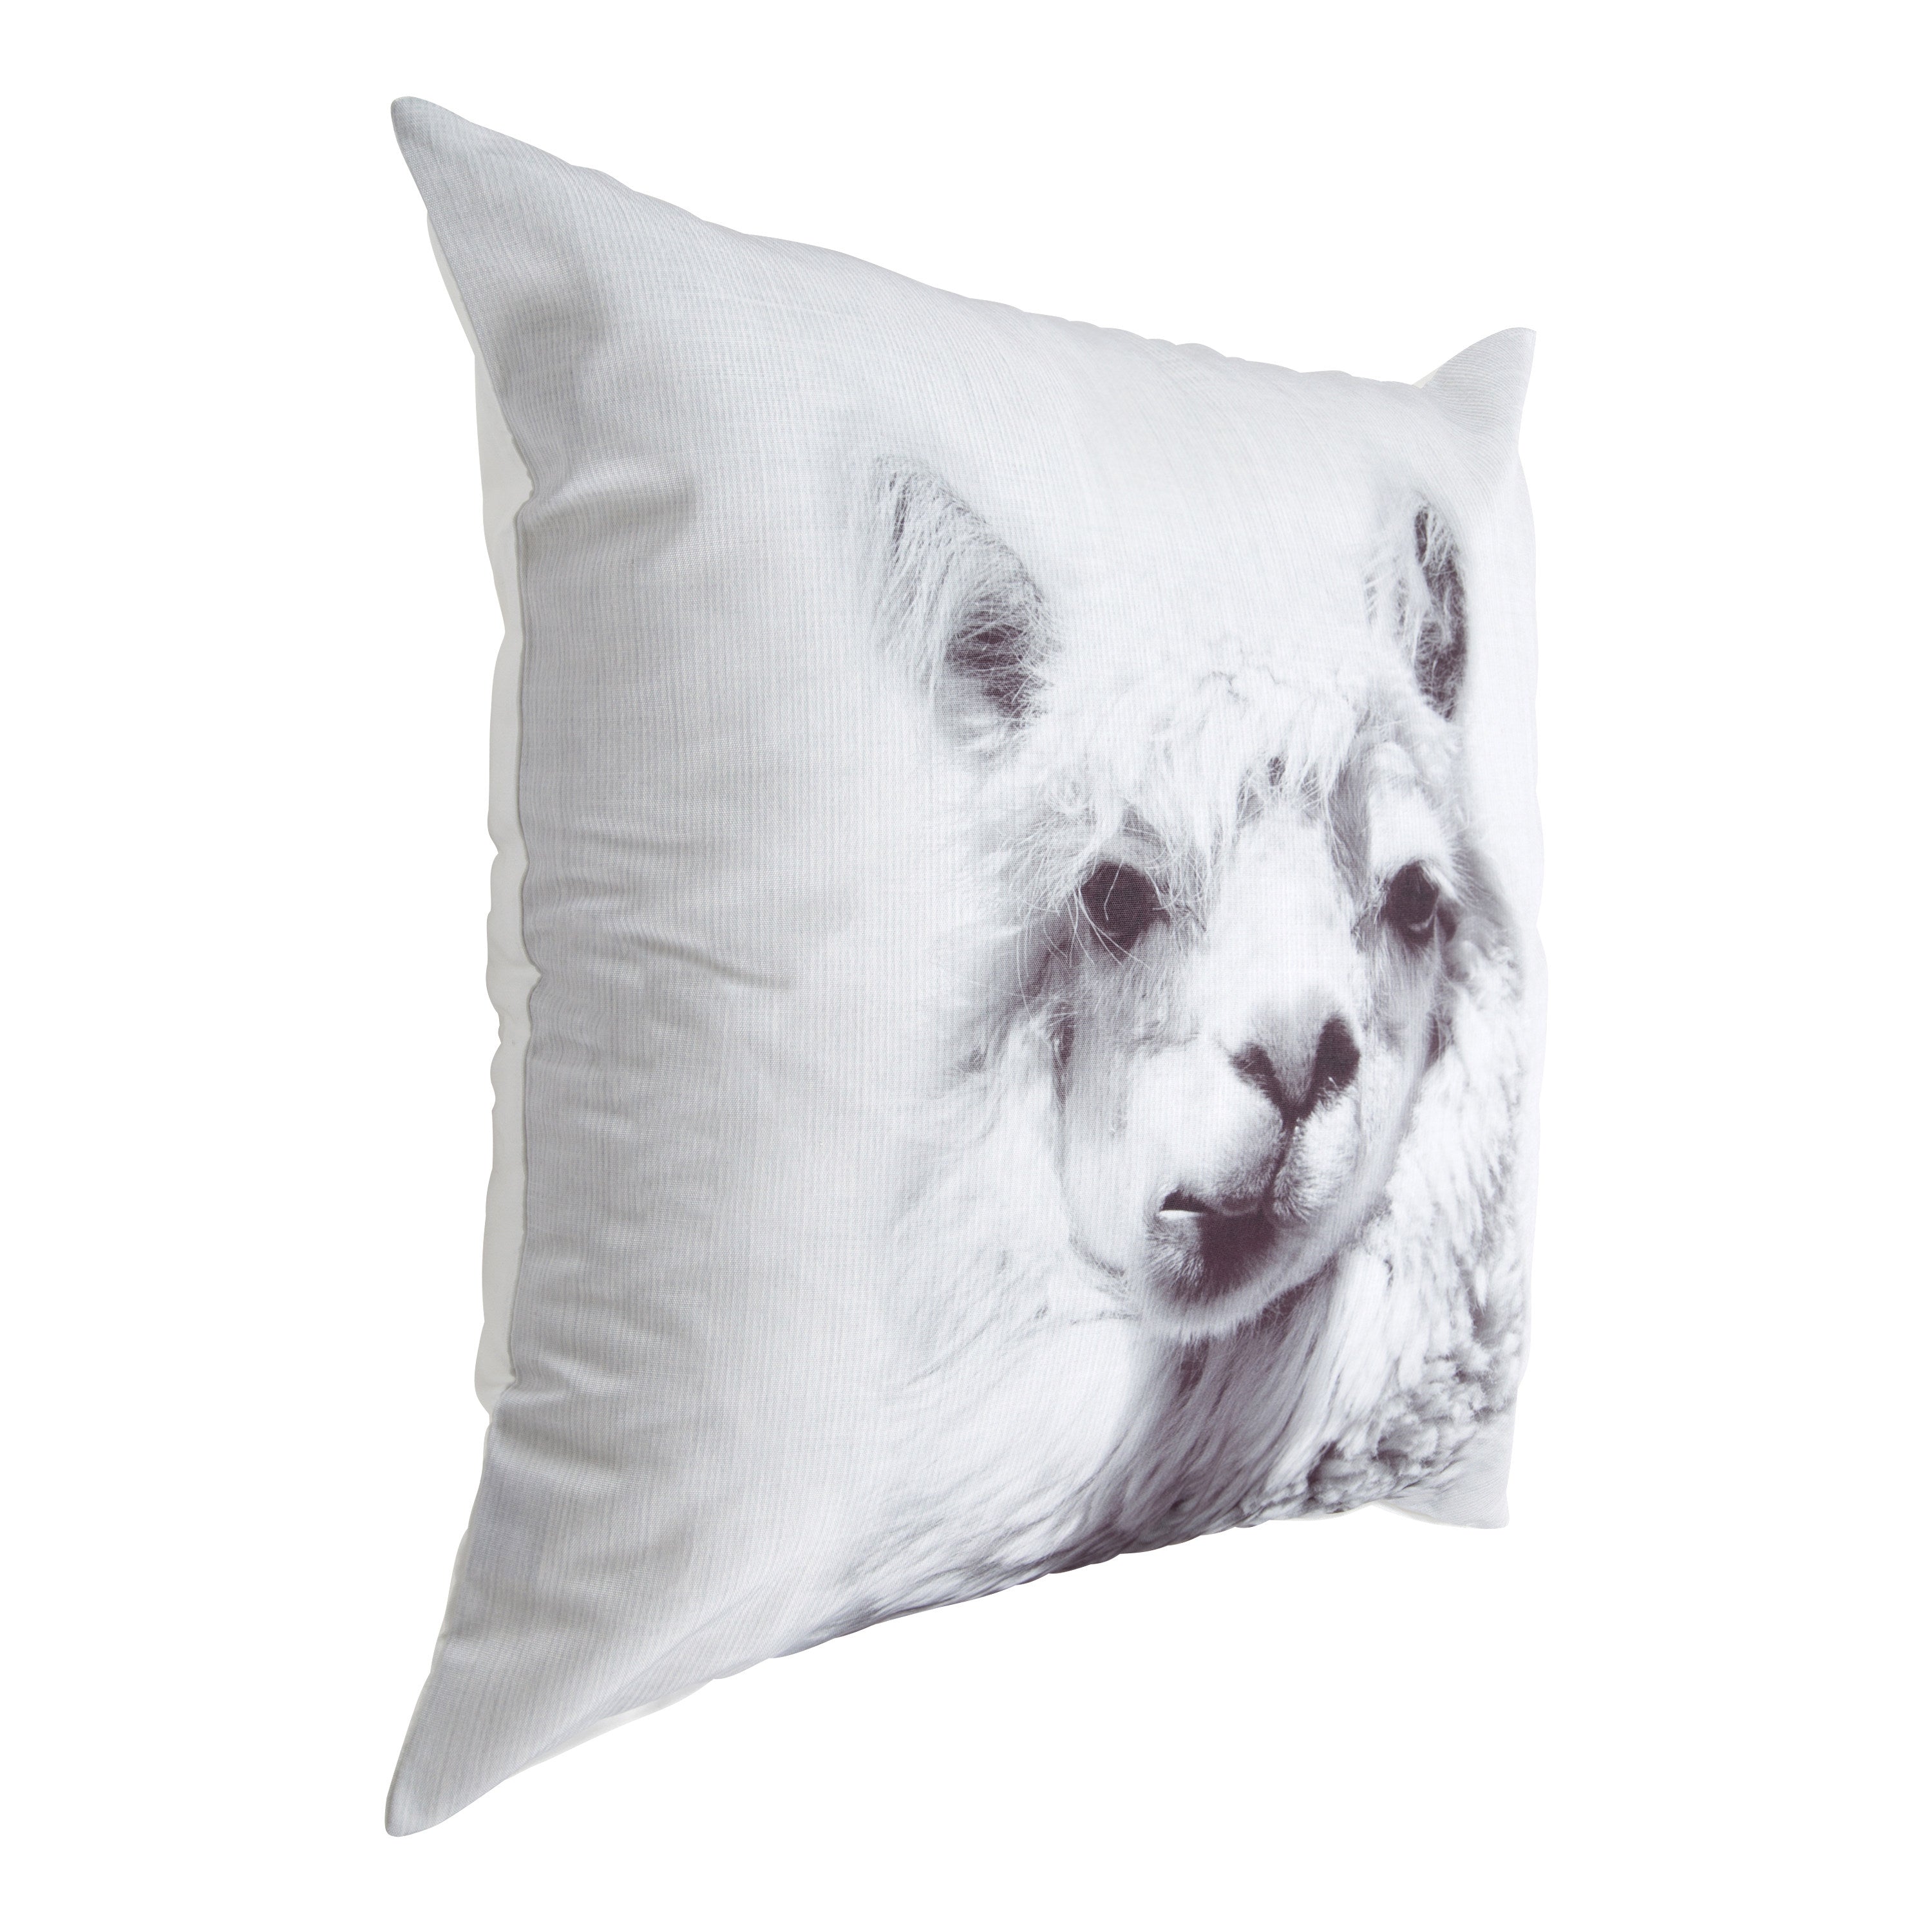 Como Alpaca Print Throw Pillow Cover